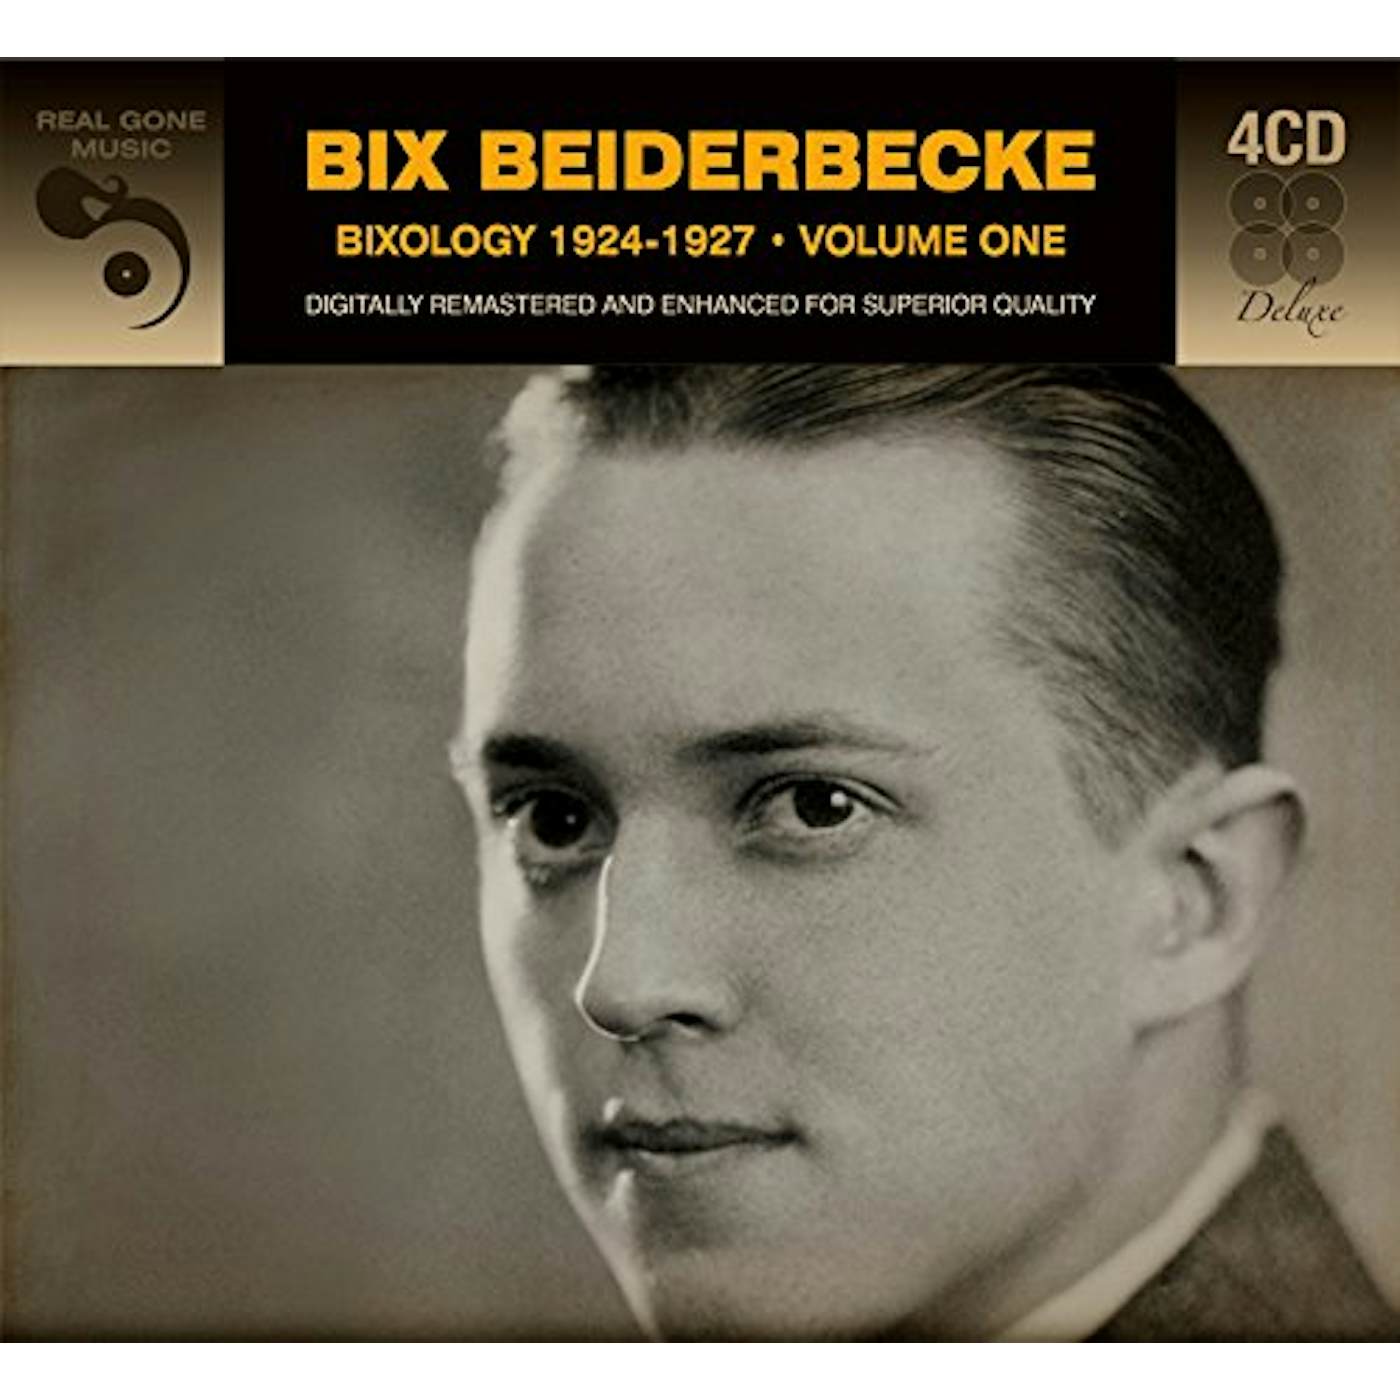 Bix Beiderbecke BIXOLOGY 1924-1927 CD